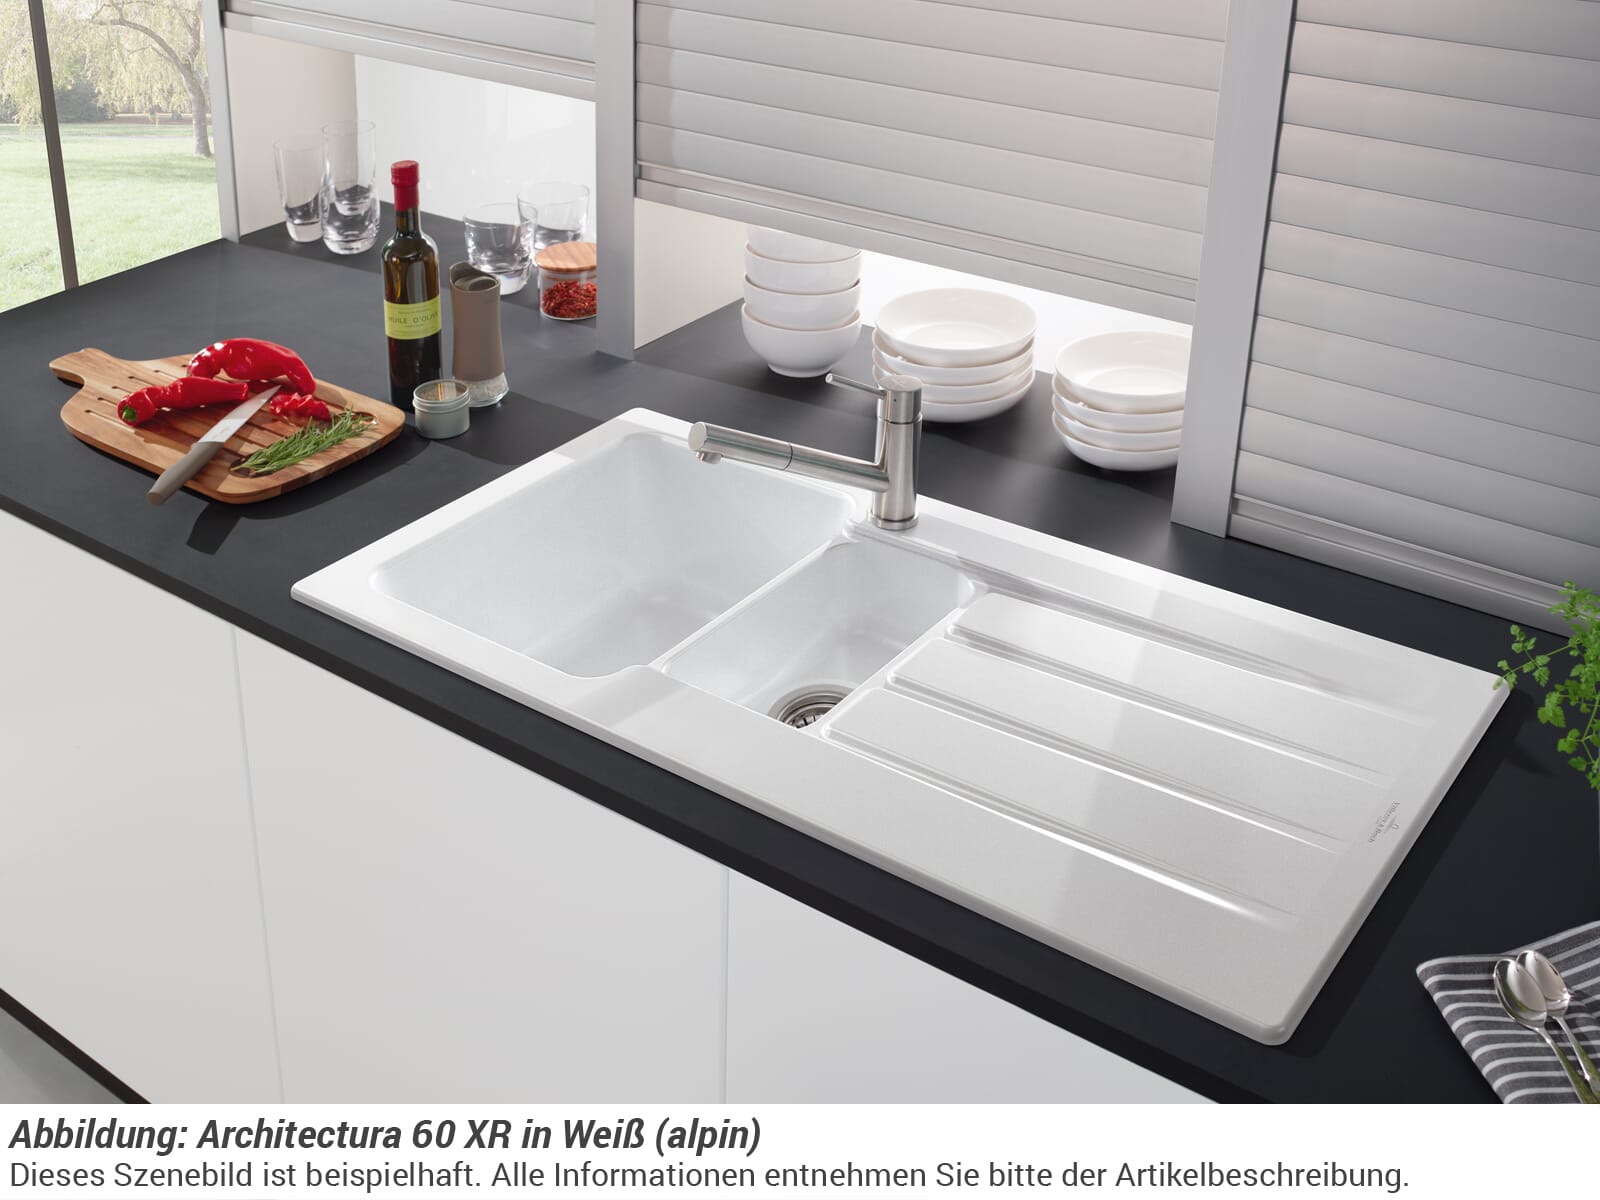 & Handbetätigung R1 Architectura (alpin) Villeroy Weiß 3365 Boch Keramikspüle - XR 01 60